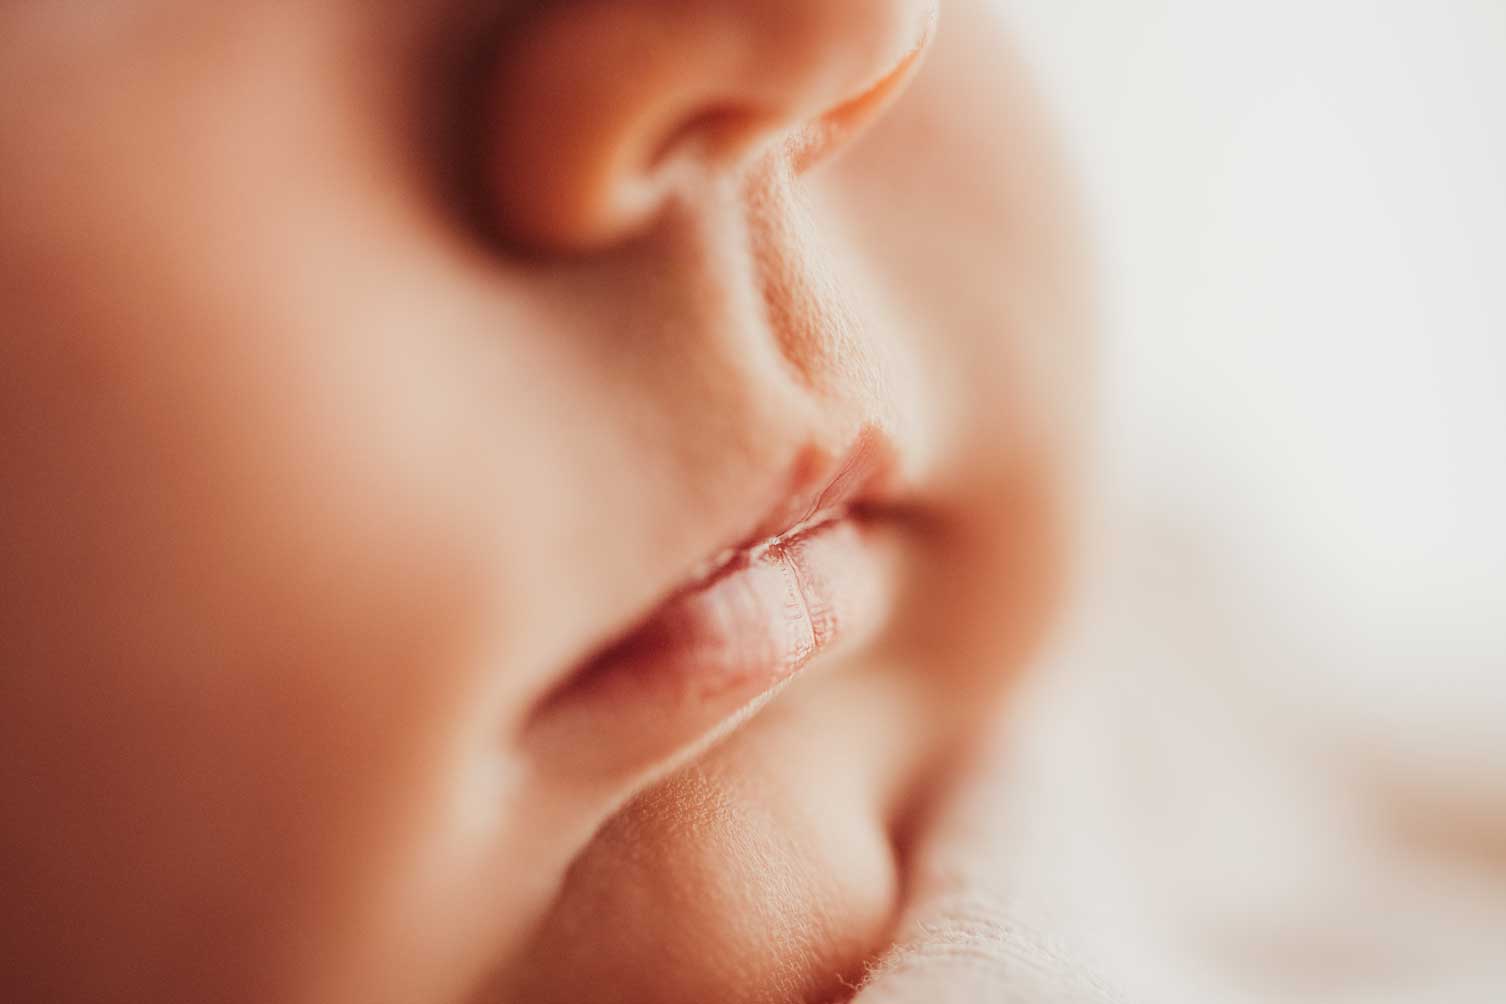 Newborn-Neugeborene-Baby-Shooting-Foto-Fotograf-Fotografie-photo-Amstetten-Scheibbs-Melk-Mostviertel-Daniela-Führer